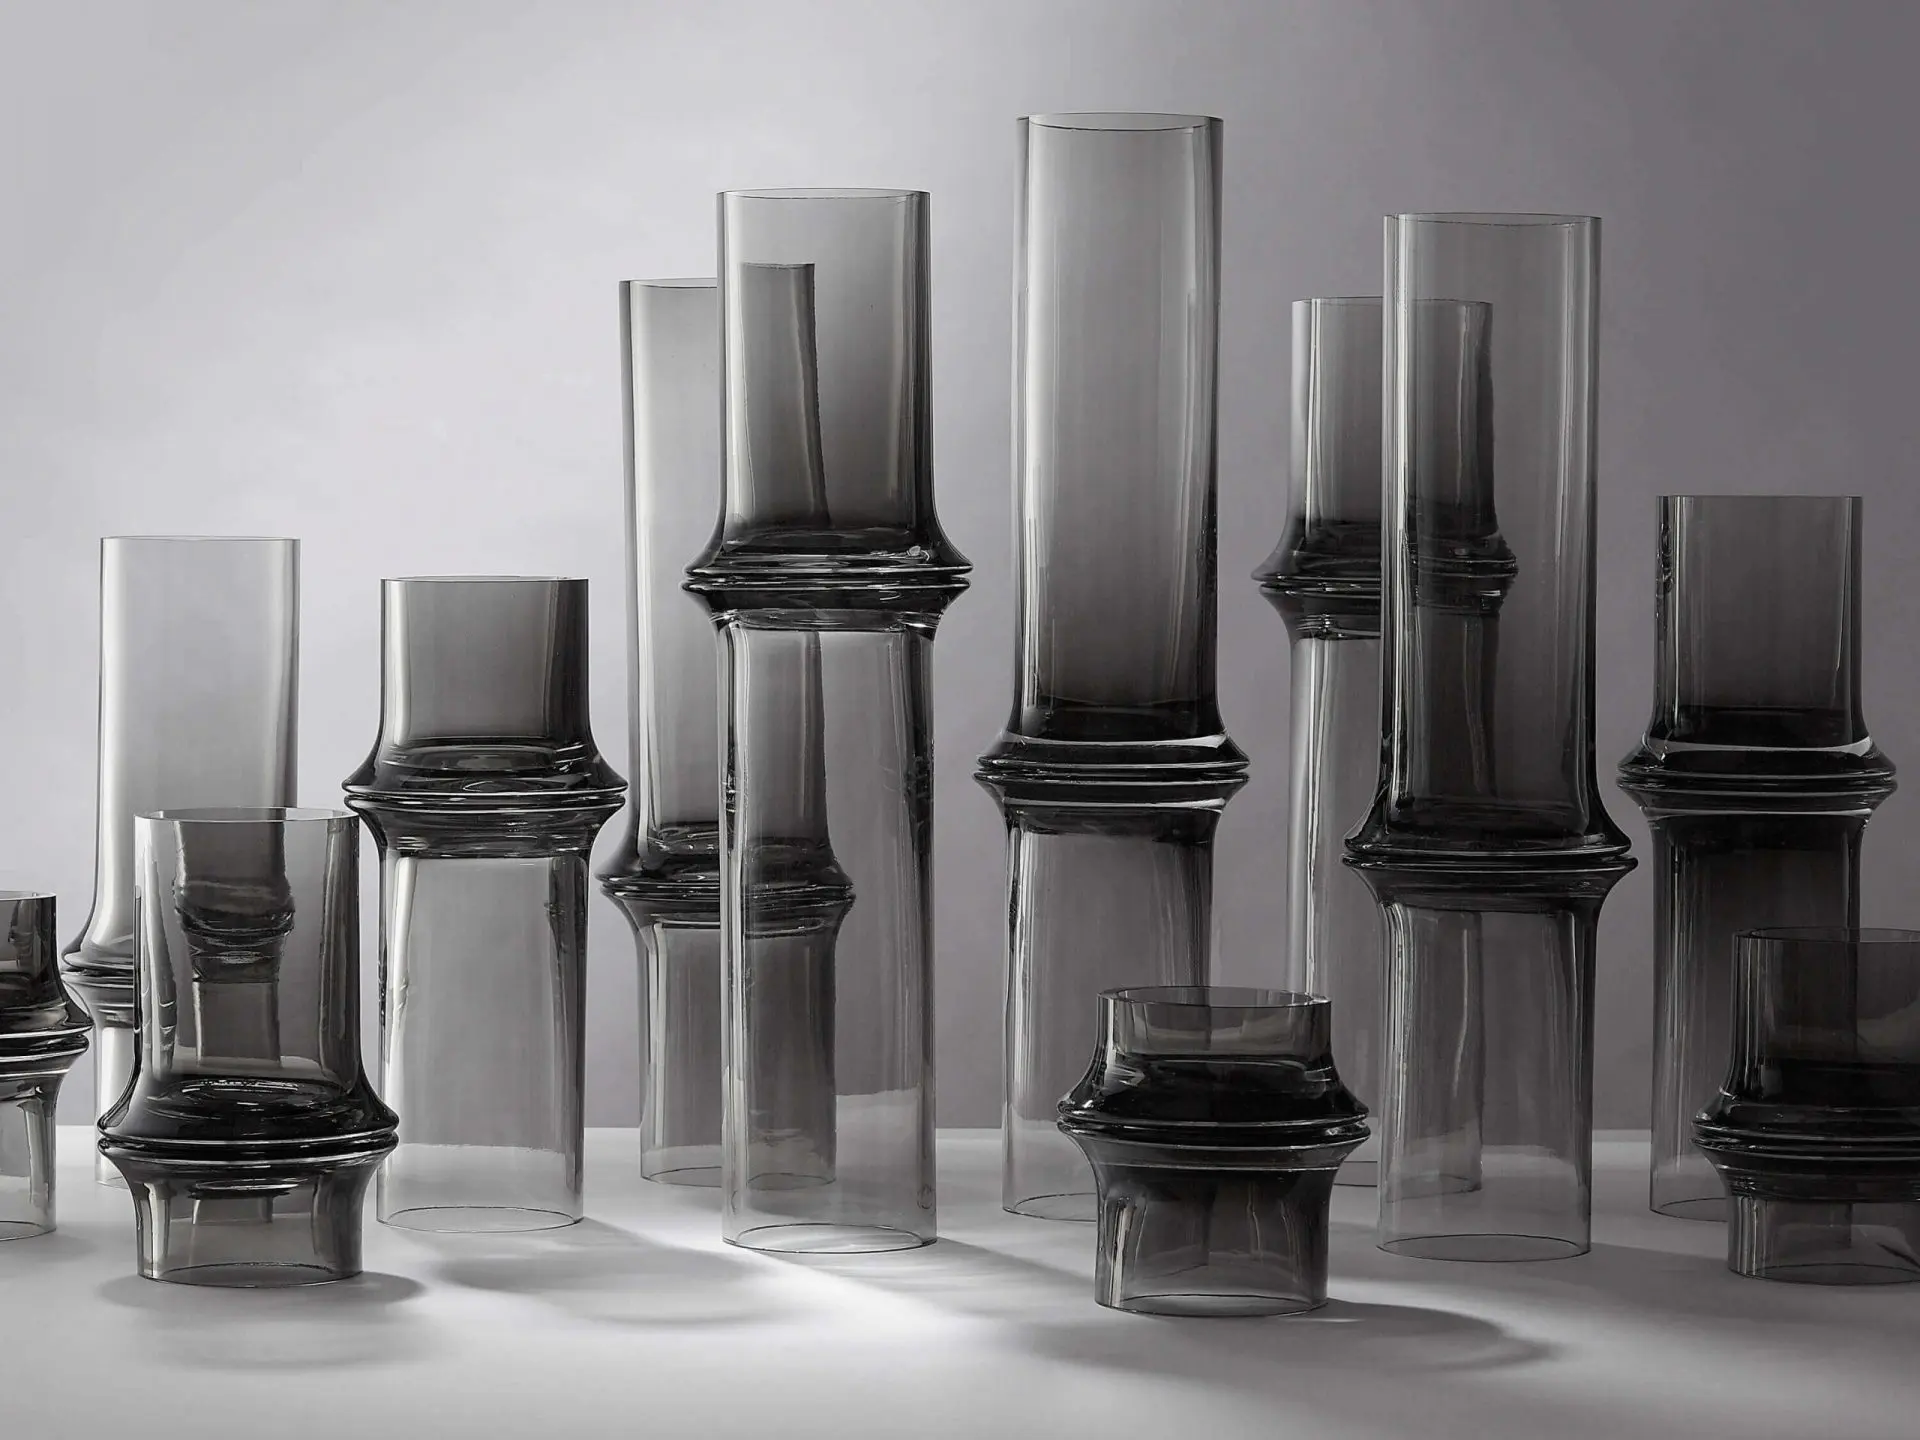 MOZHU 100% recycled glass vases